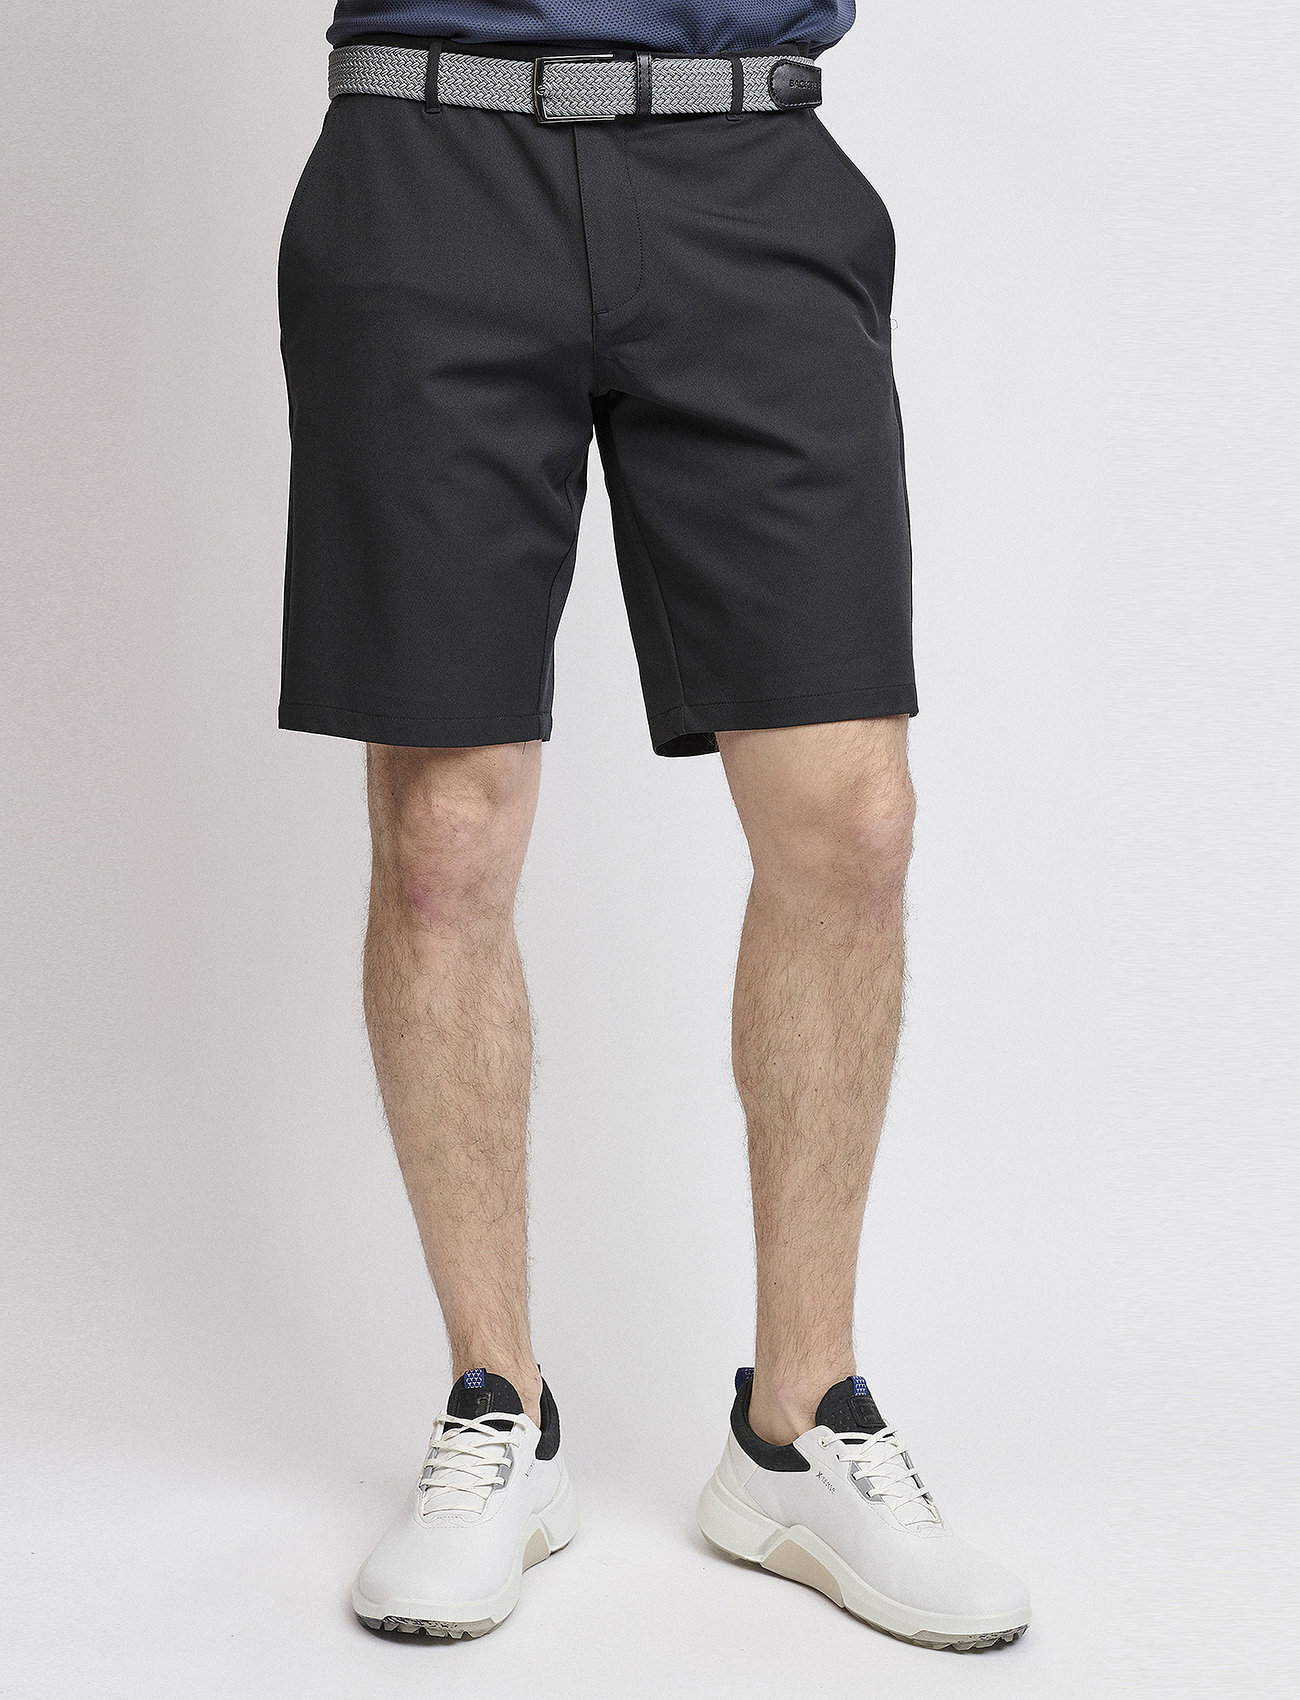 BACKTEE - Mens Lightweight Shorts - golf shorts - black - 1